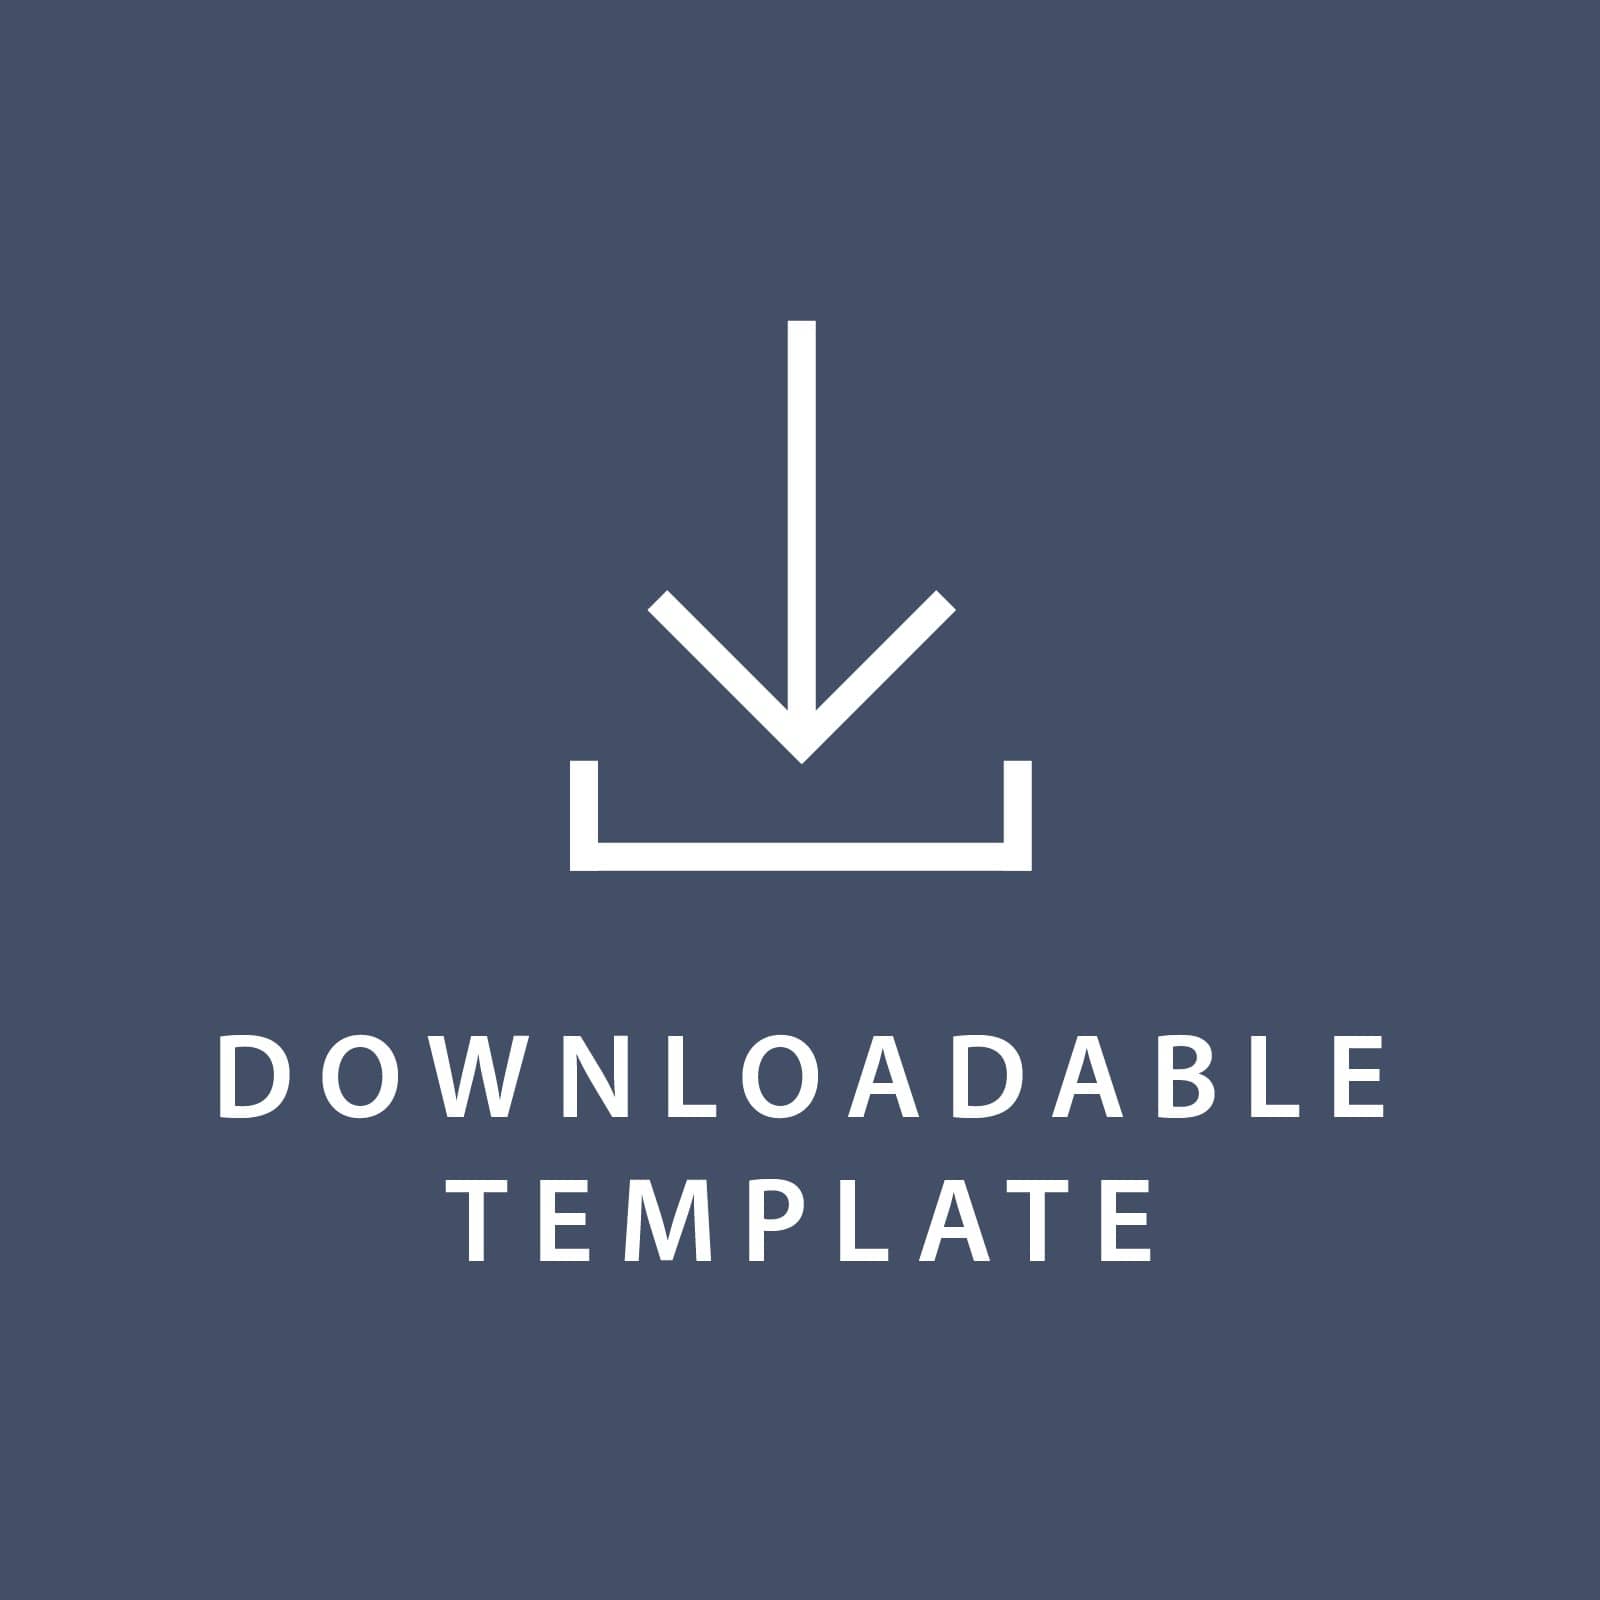 Template for 11 x 8.5 Program Paper Gartner Studios Template tmplt0888